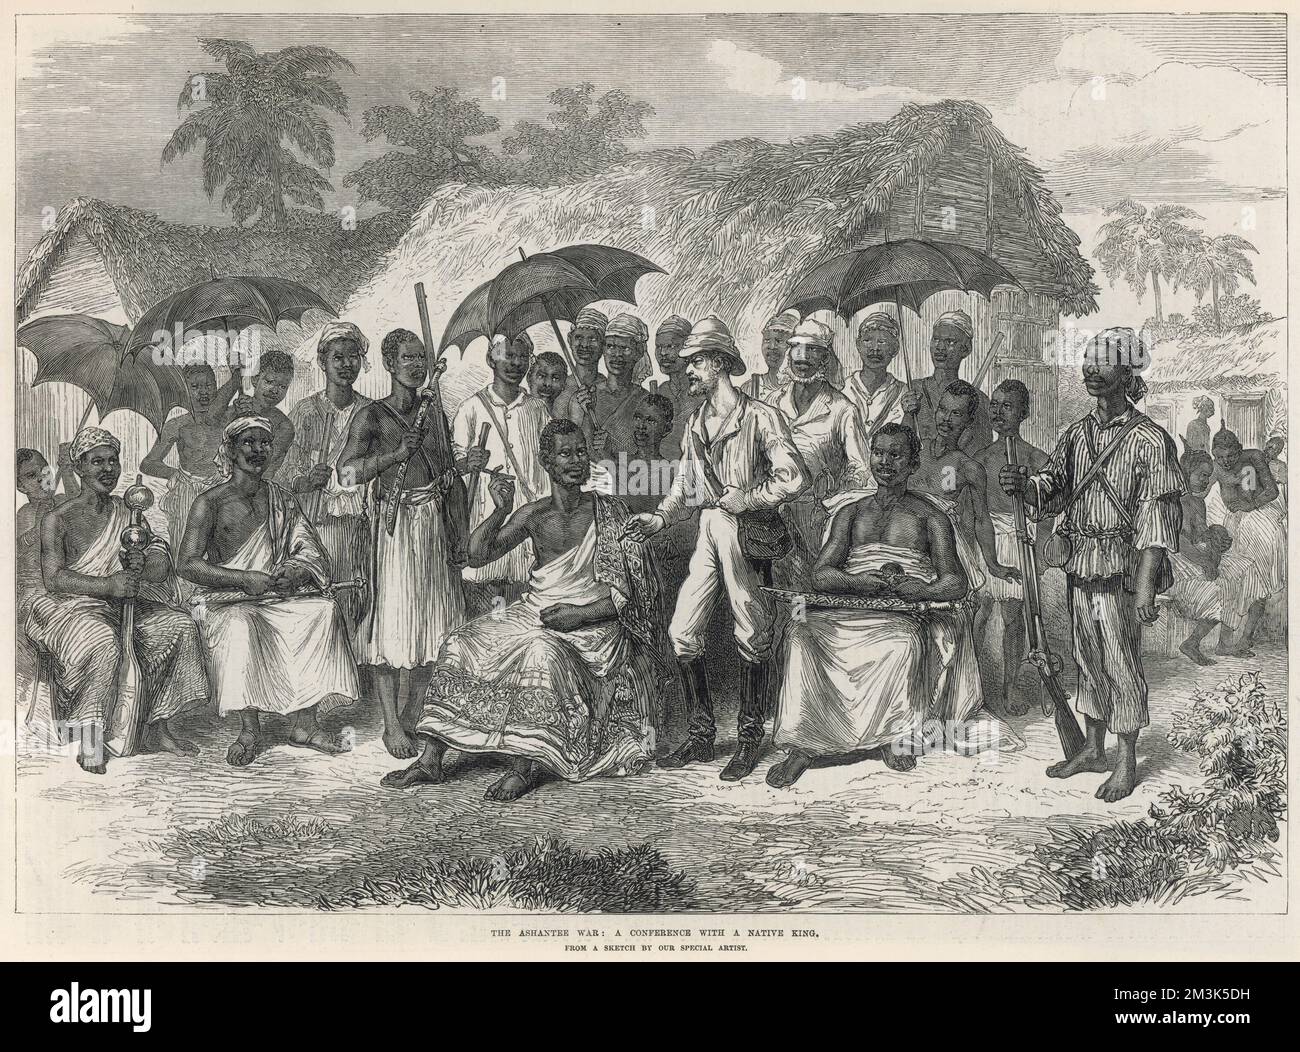 Una conferenza tra gli inglesi e un re nativo. La seconda guerra Ashanti combattuta tra il 1873-74, fu tra il re Kofi Karikari, governatore degli Ashanti (o Asantehene), e gli inglesi. Entrambi cercavano di assicurare la città costiera di Elmina sulla costa occidentale dell'Africa, conosciuta anche come Gold Coast. 1874 Foto Stock